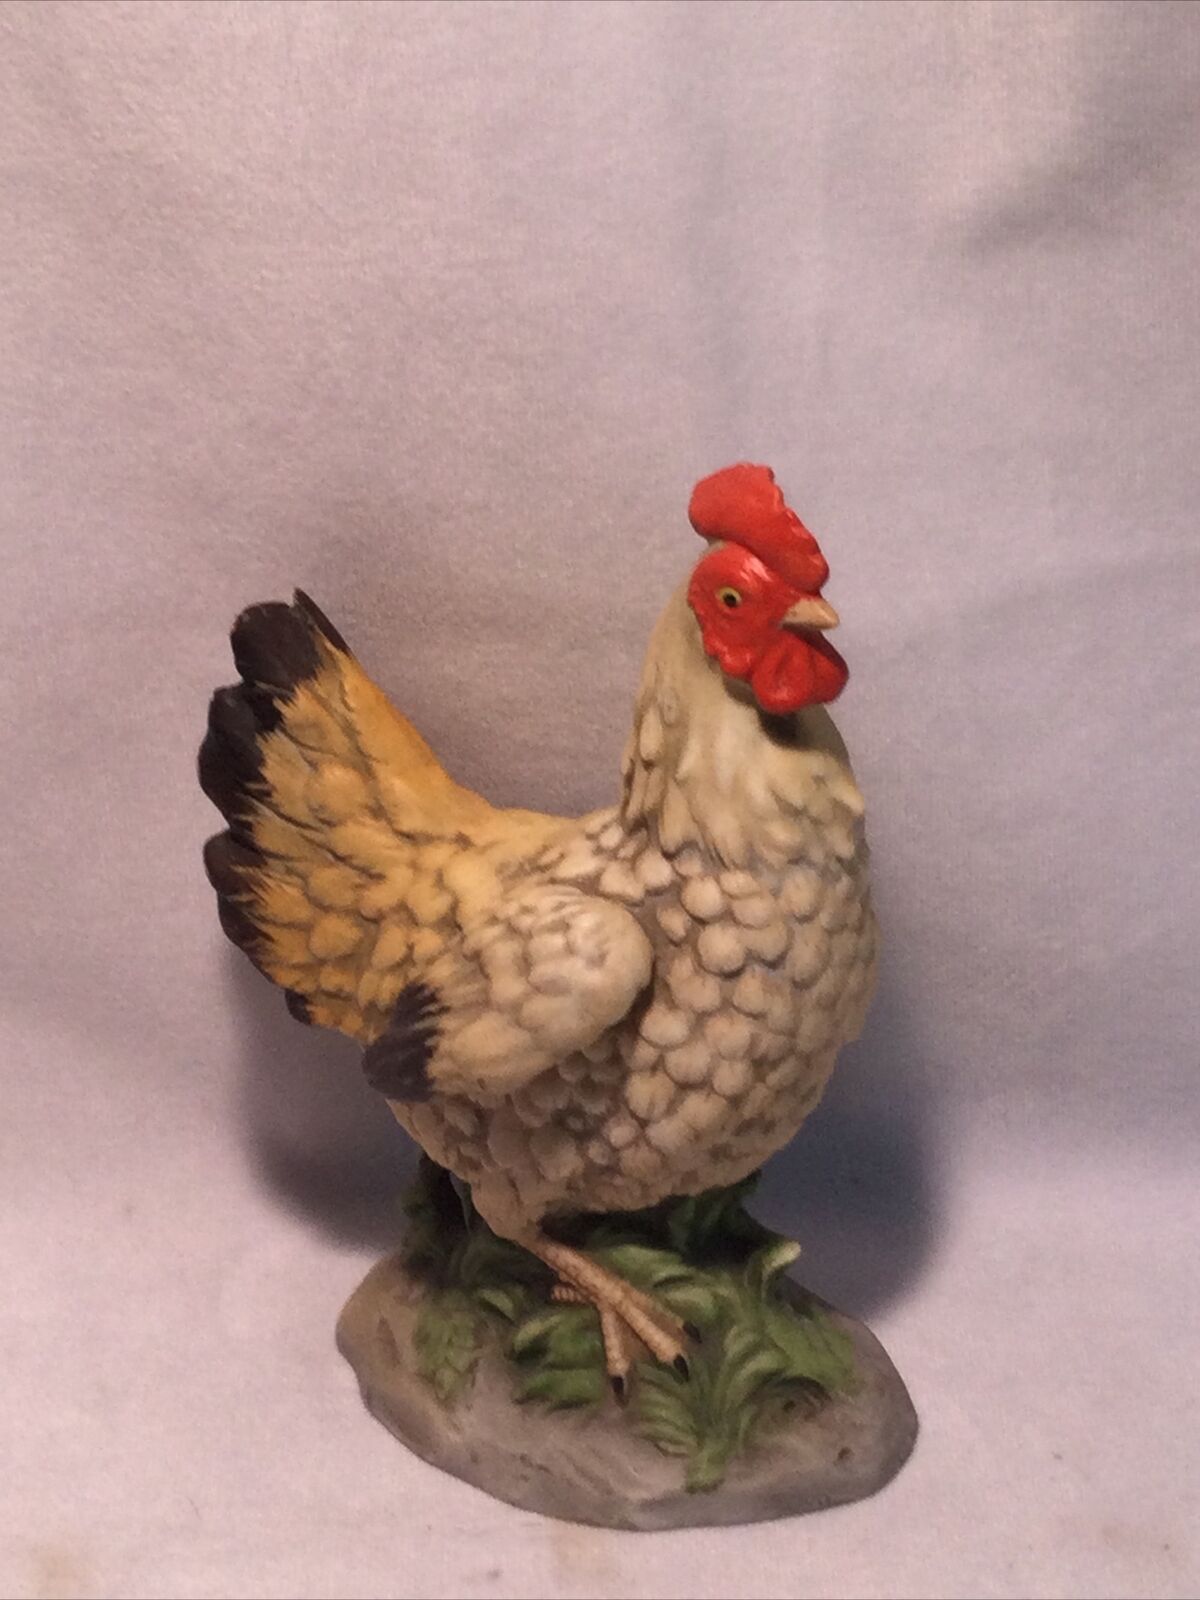 Vintage Homco Chicken Chic Hen Farm Country Bisque Figurine Ceramic 6”